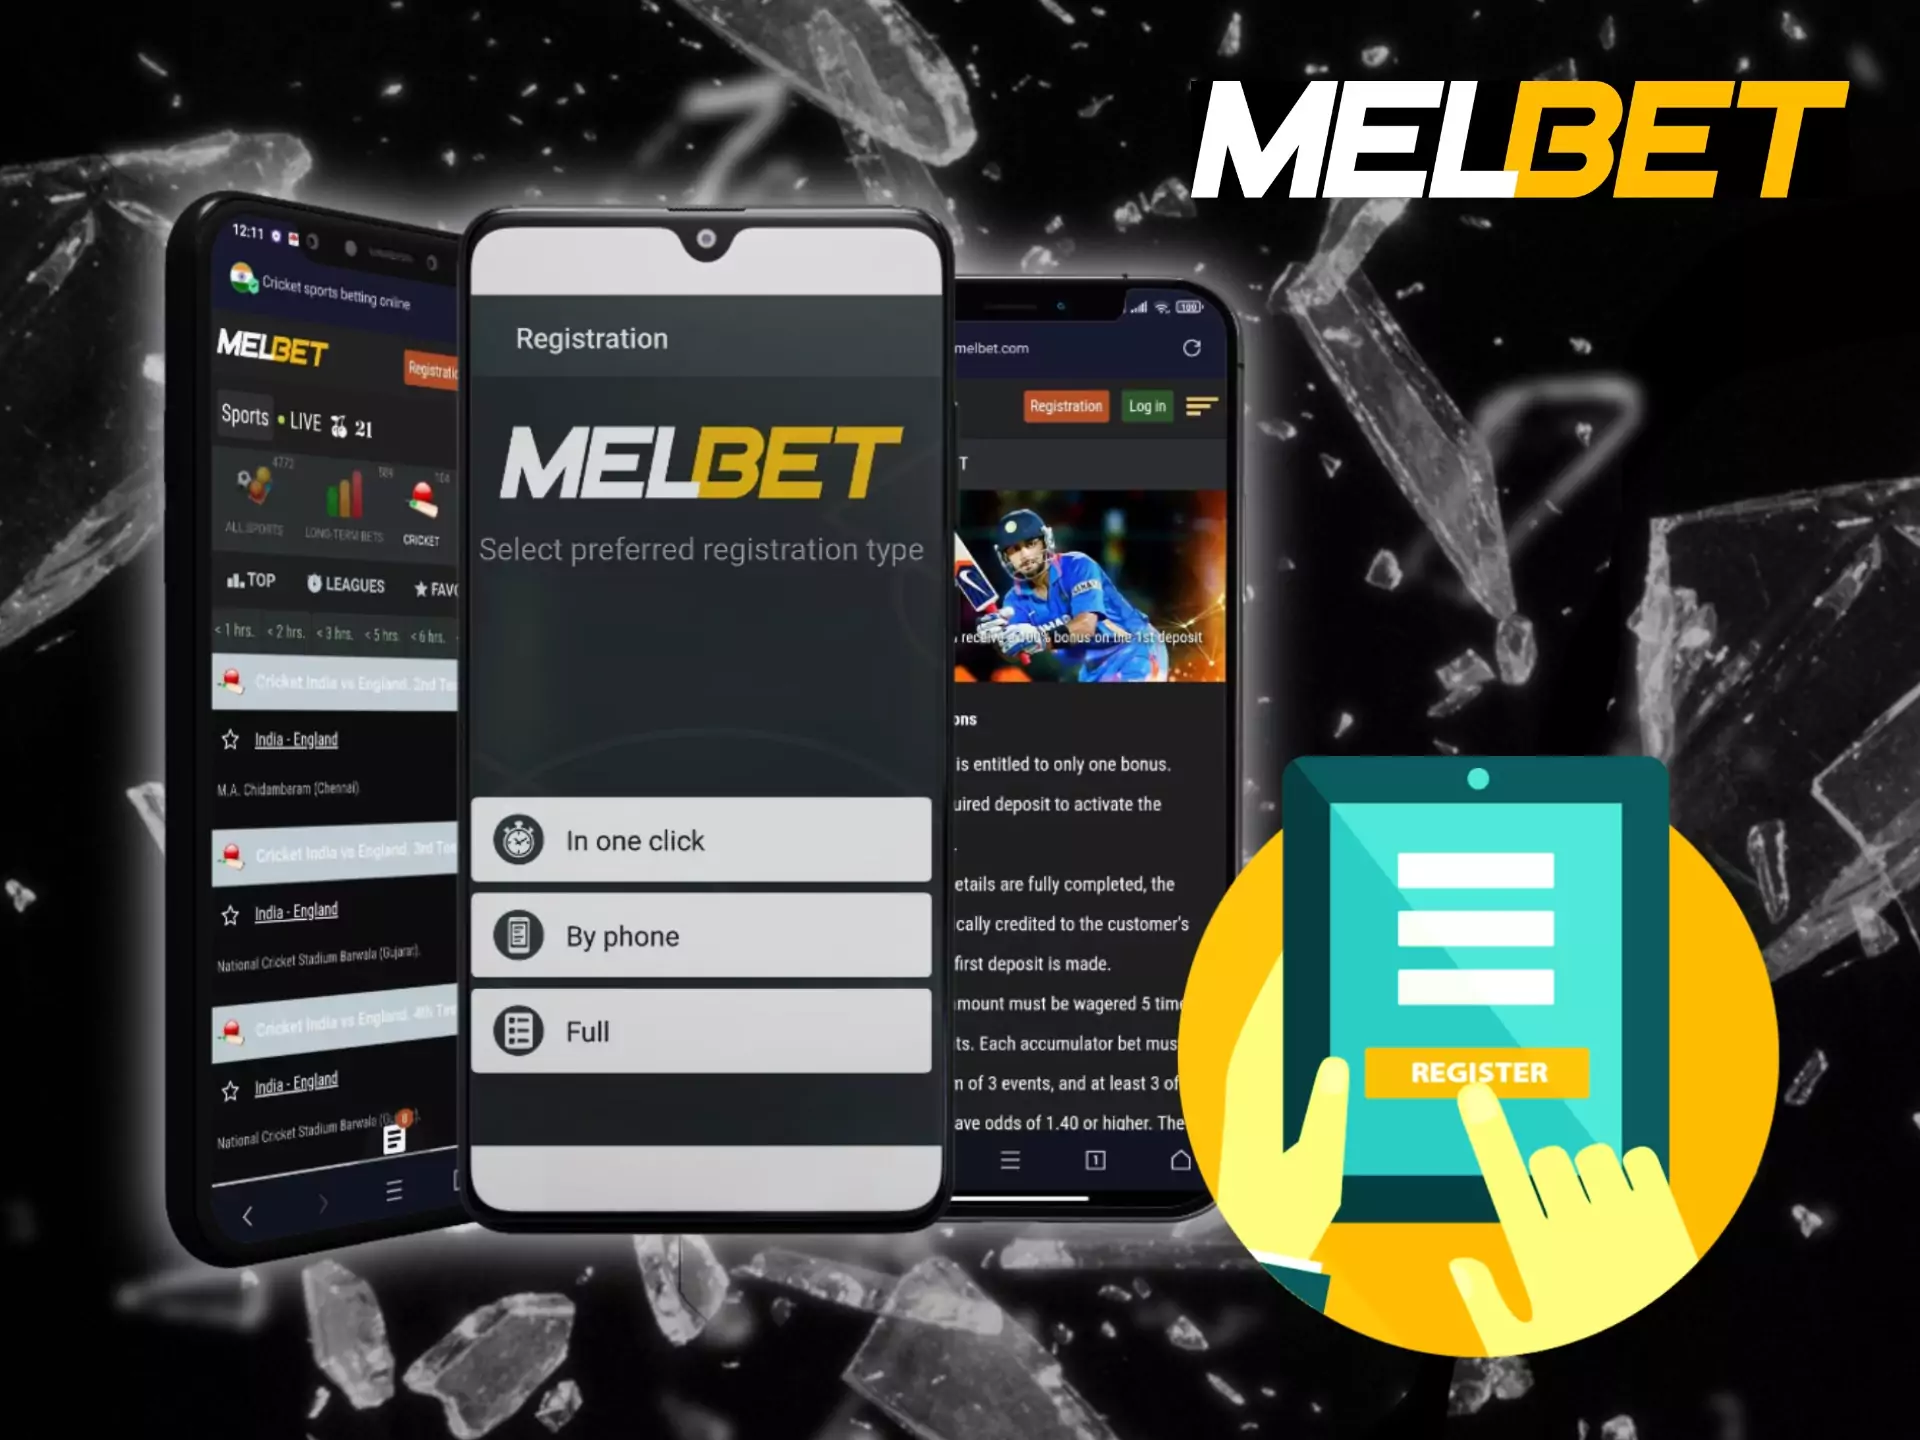 आप Melbet ऐप डाउनलोड कर सकते हैं और मोबाइल फोन के जरिए अपना अकाउंट बना सकते हैं।